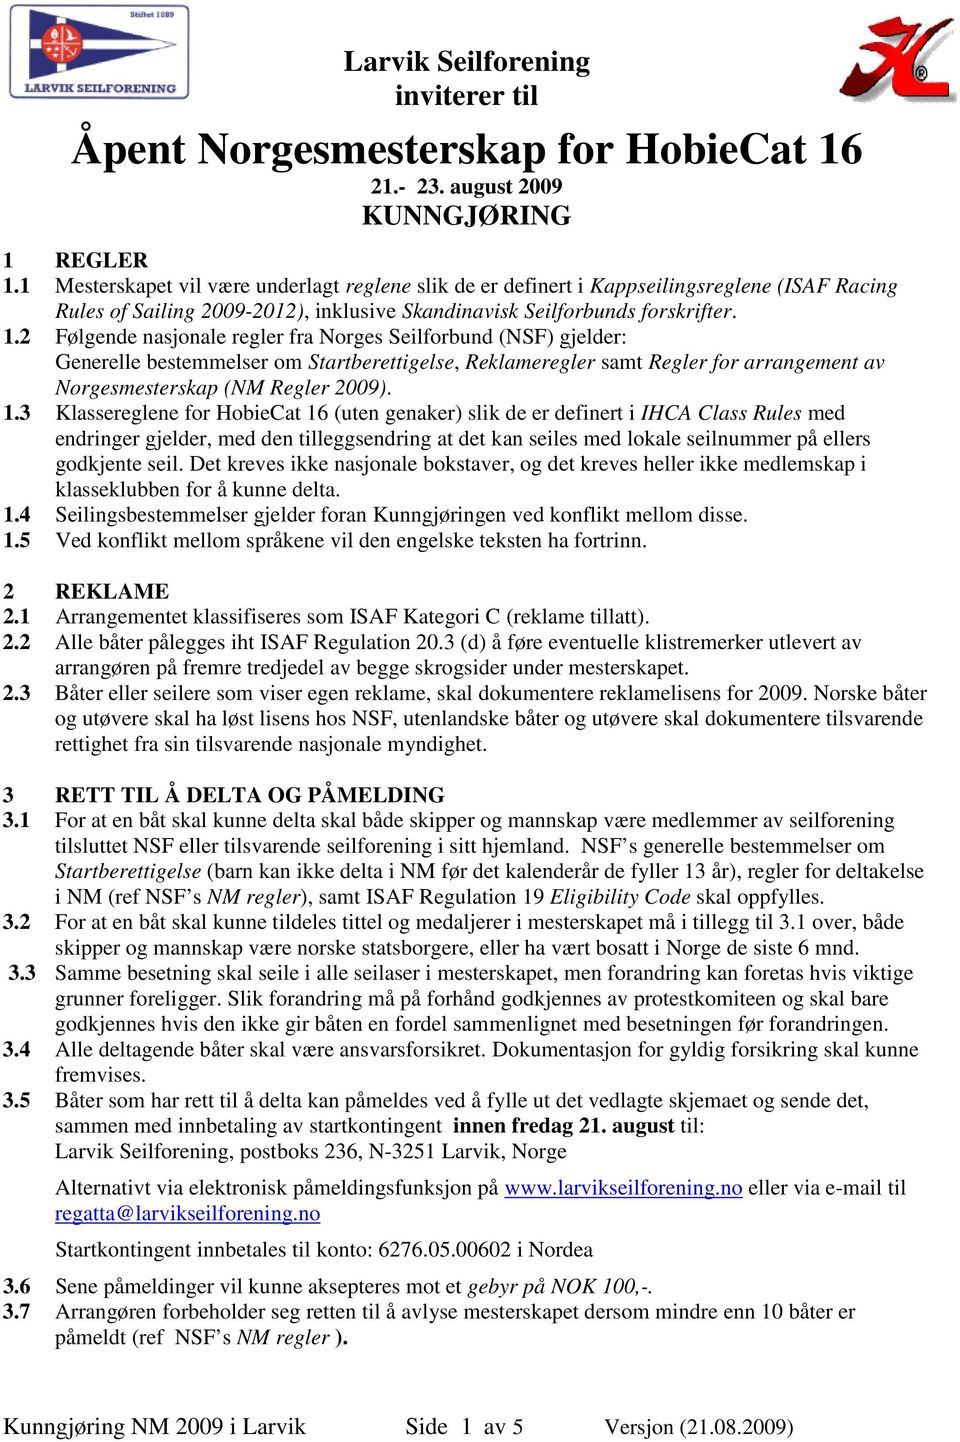 2 Følgende nasjonale regler fra Norges Seilforbund (NSF) gjelder: Generelle bestemmelser om Startberettigelse, Reklameregler samt Regler for arrangement av Norgesmesterskap (NM Regler 2009). 1.